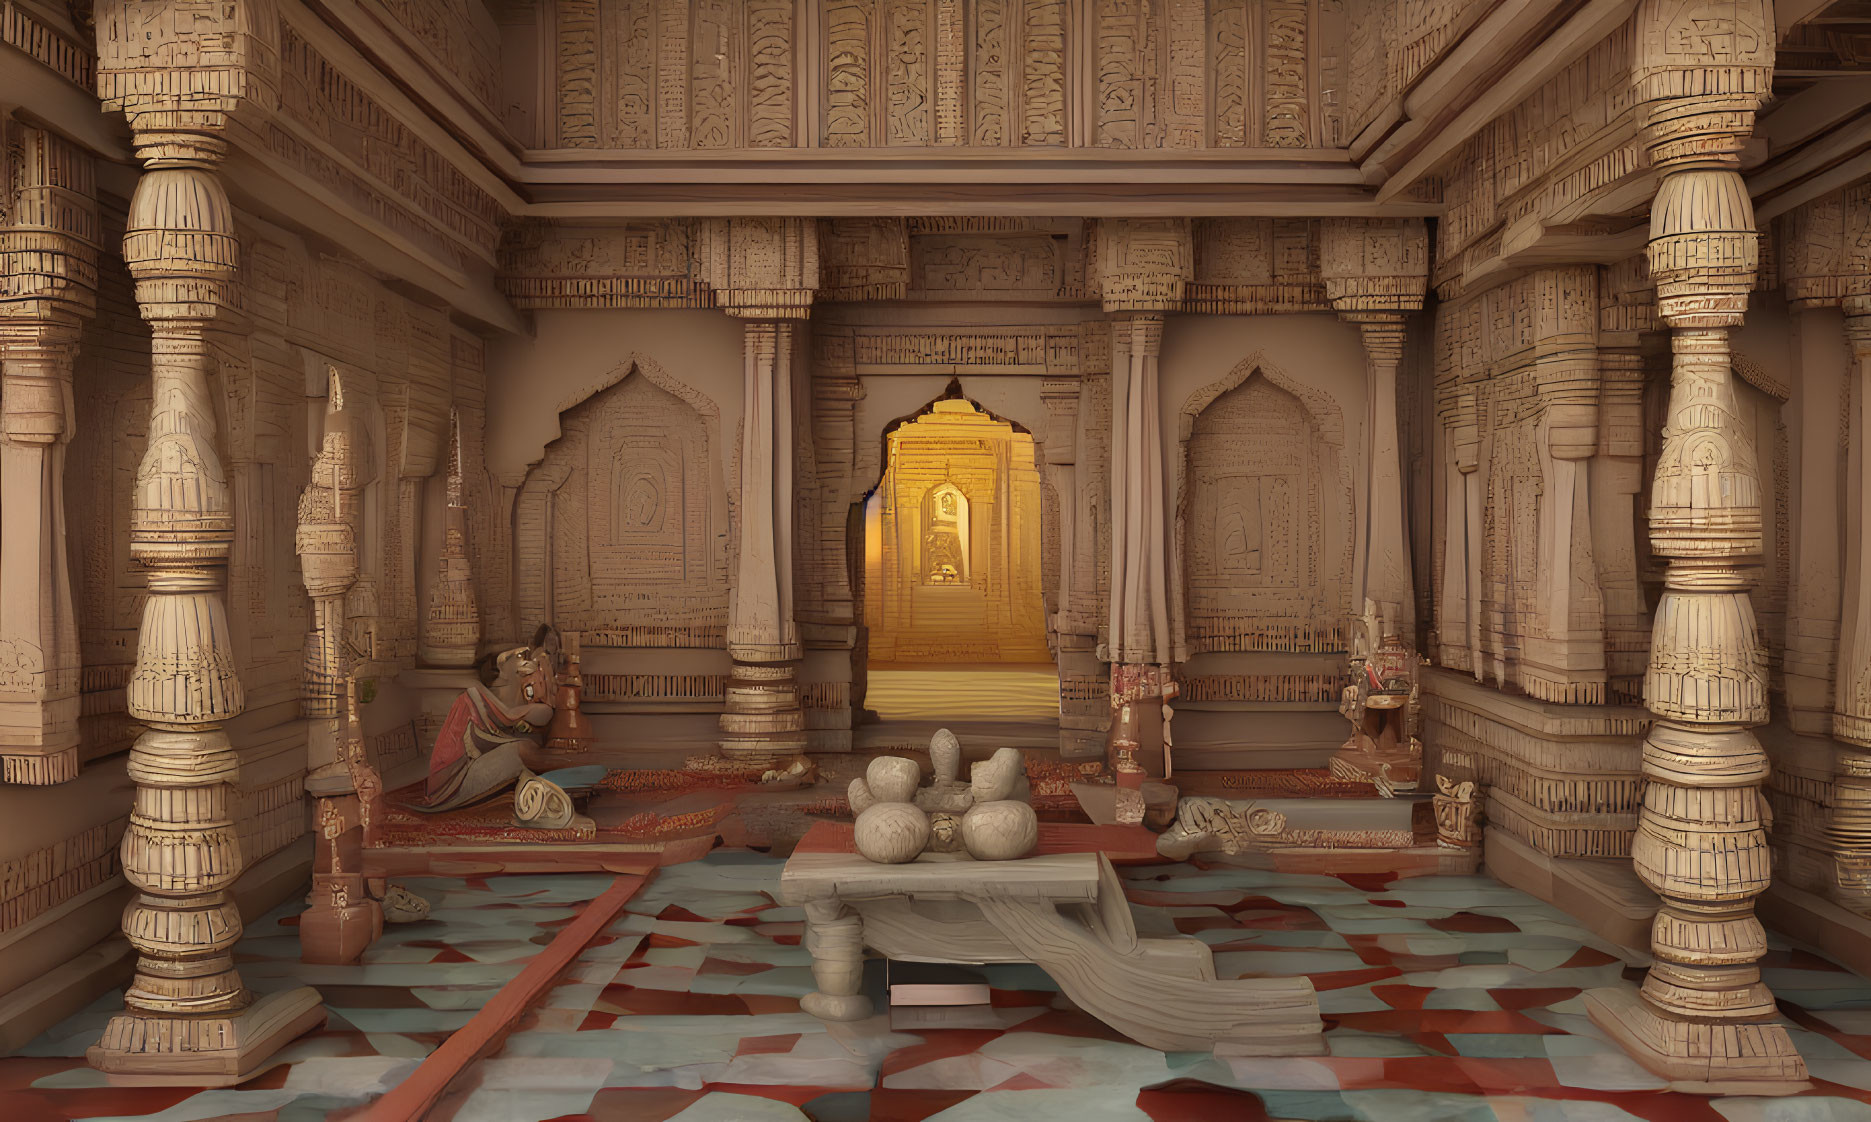 Intricate Hindu temple interior with golden sanctum door & deity statues